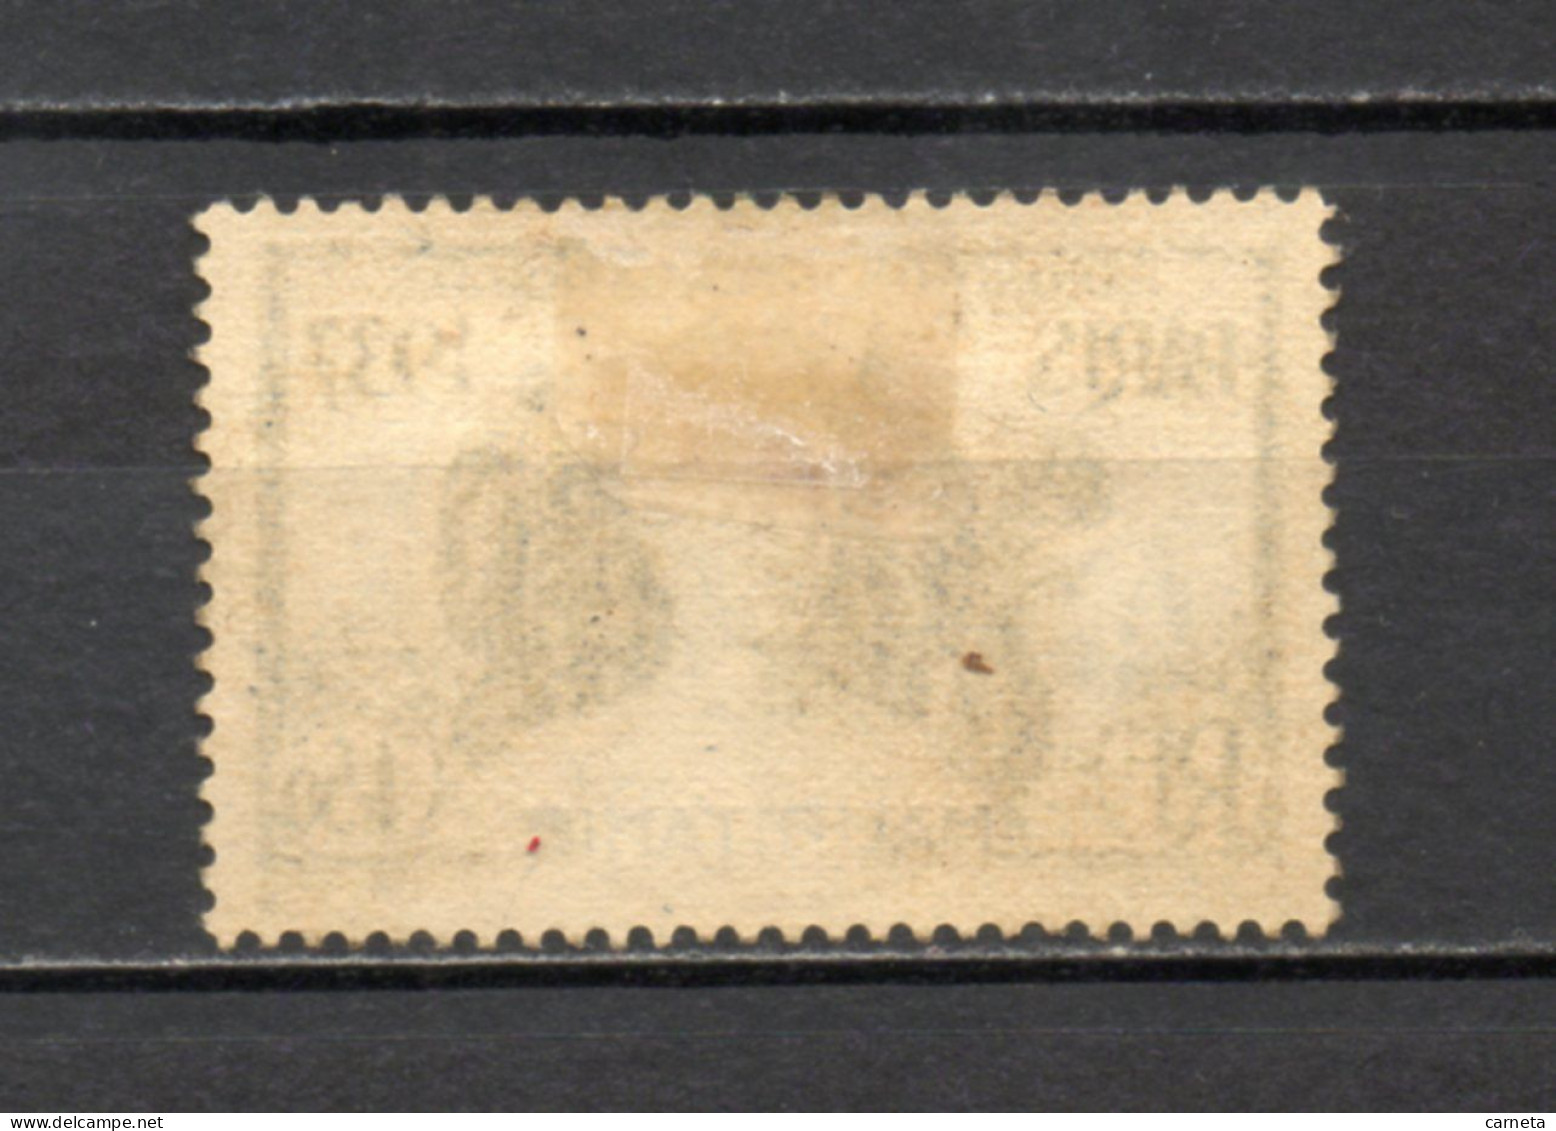 MAURITANIE  N° 71   OBLITERE    COTE 2.00€     EXPOSITION DE PARIS - Used Stamps